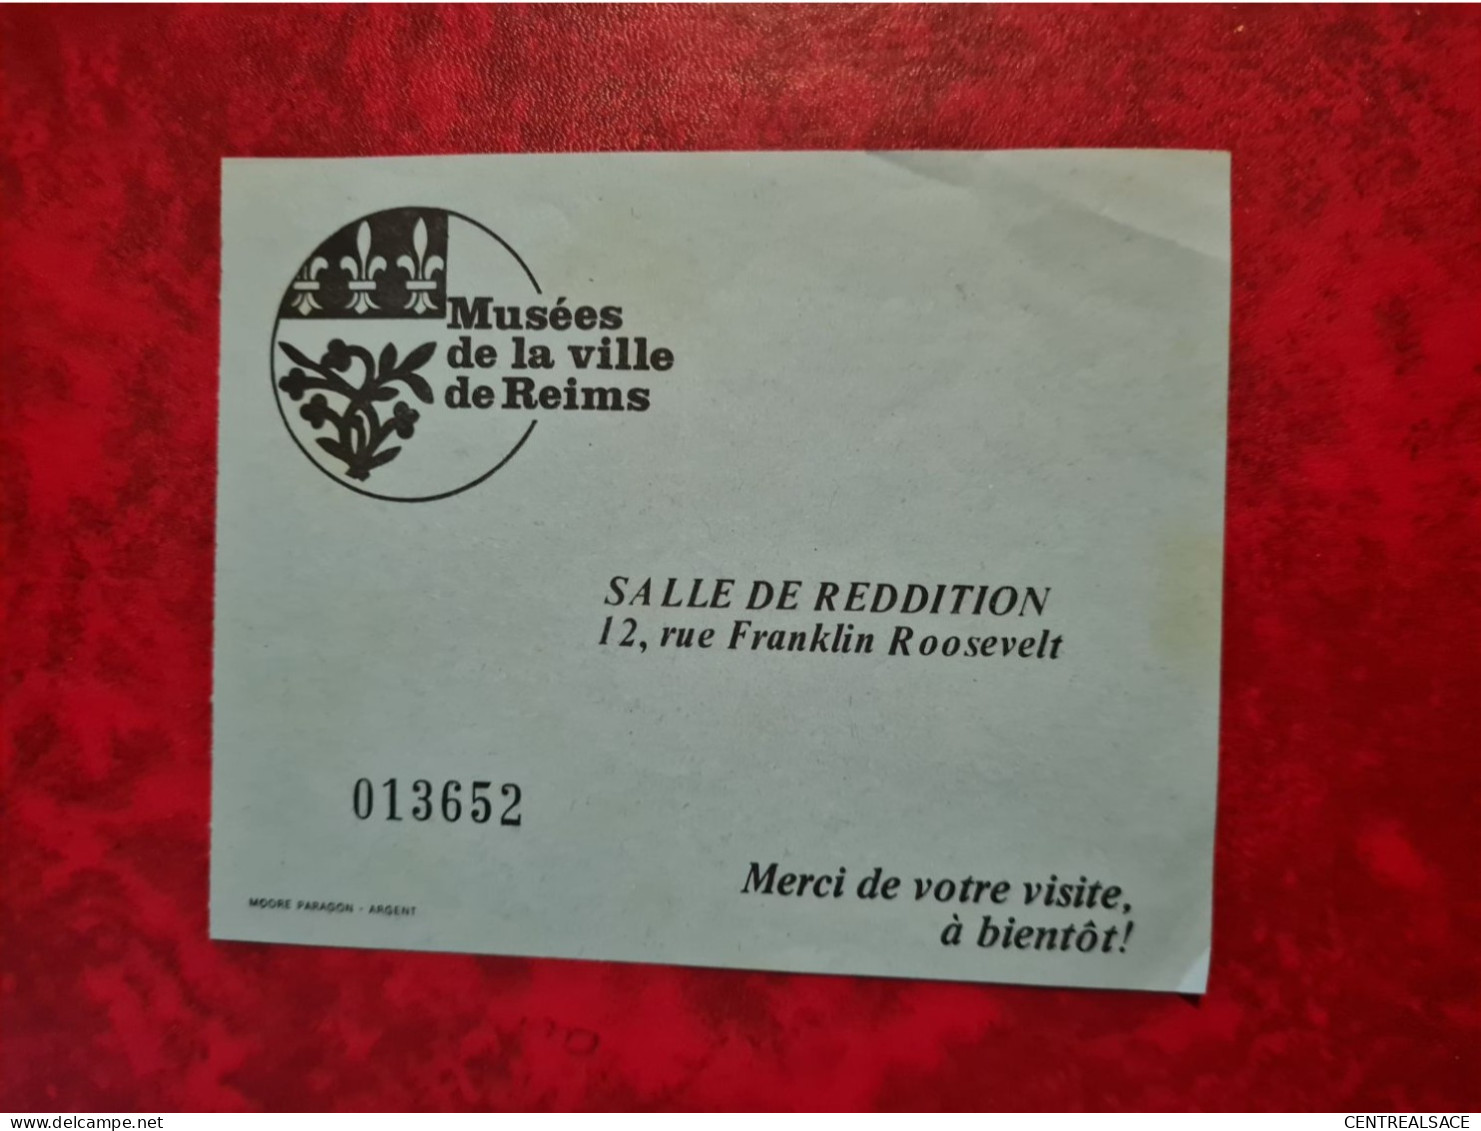 MUSEES DE LA VILLE DE REIMS SALLE DE REDDITION BILLET - Documenti Storici